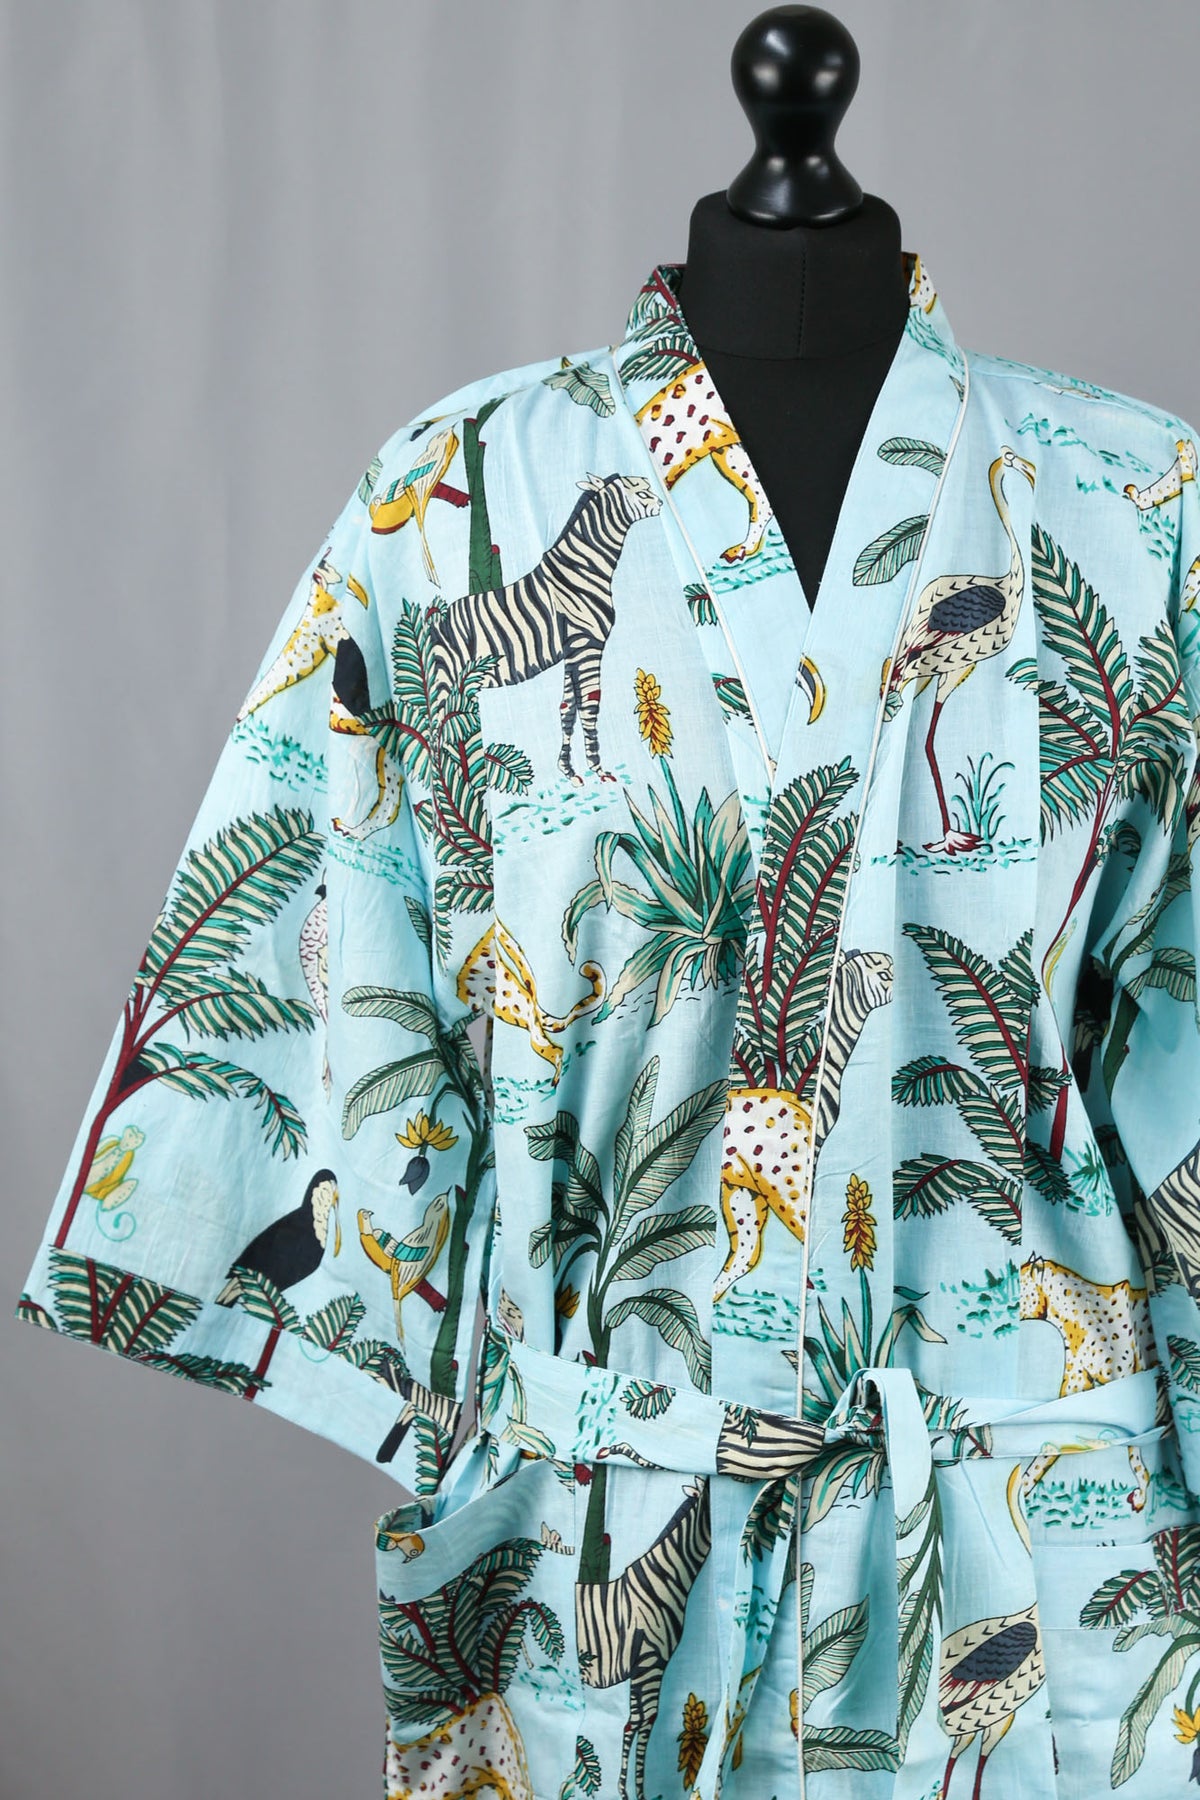 Kimono-Morgenmantel aus Safari-Tier auf Aqua-Baumwolle